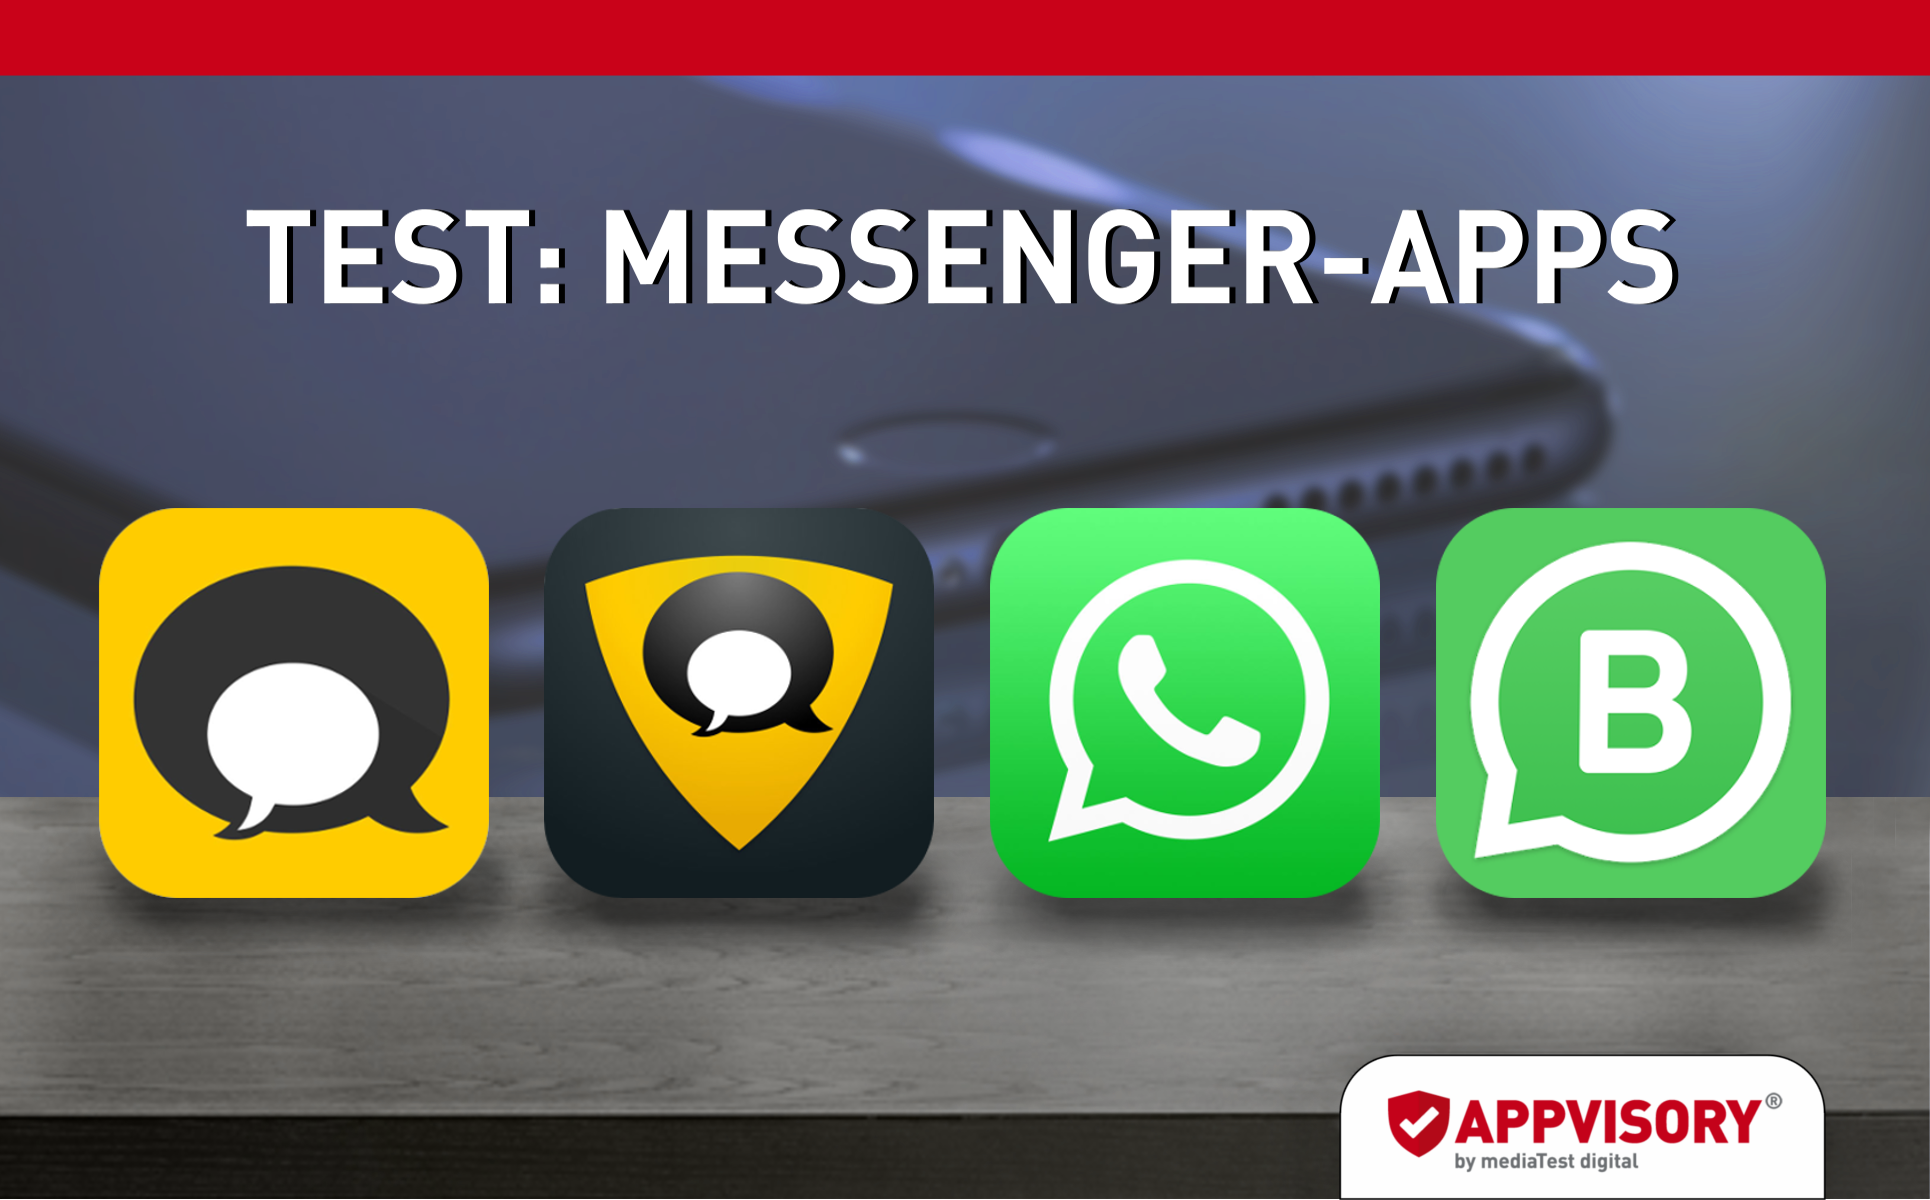 Messenger-Apps & Datenschutz: Welche ist wirklich sicher?